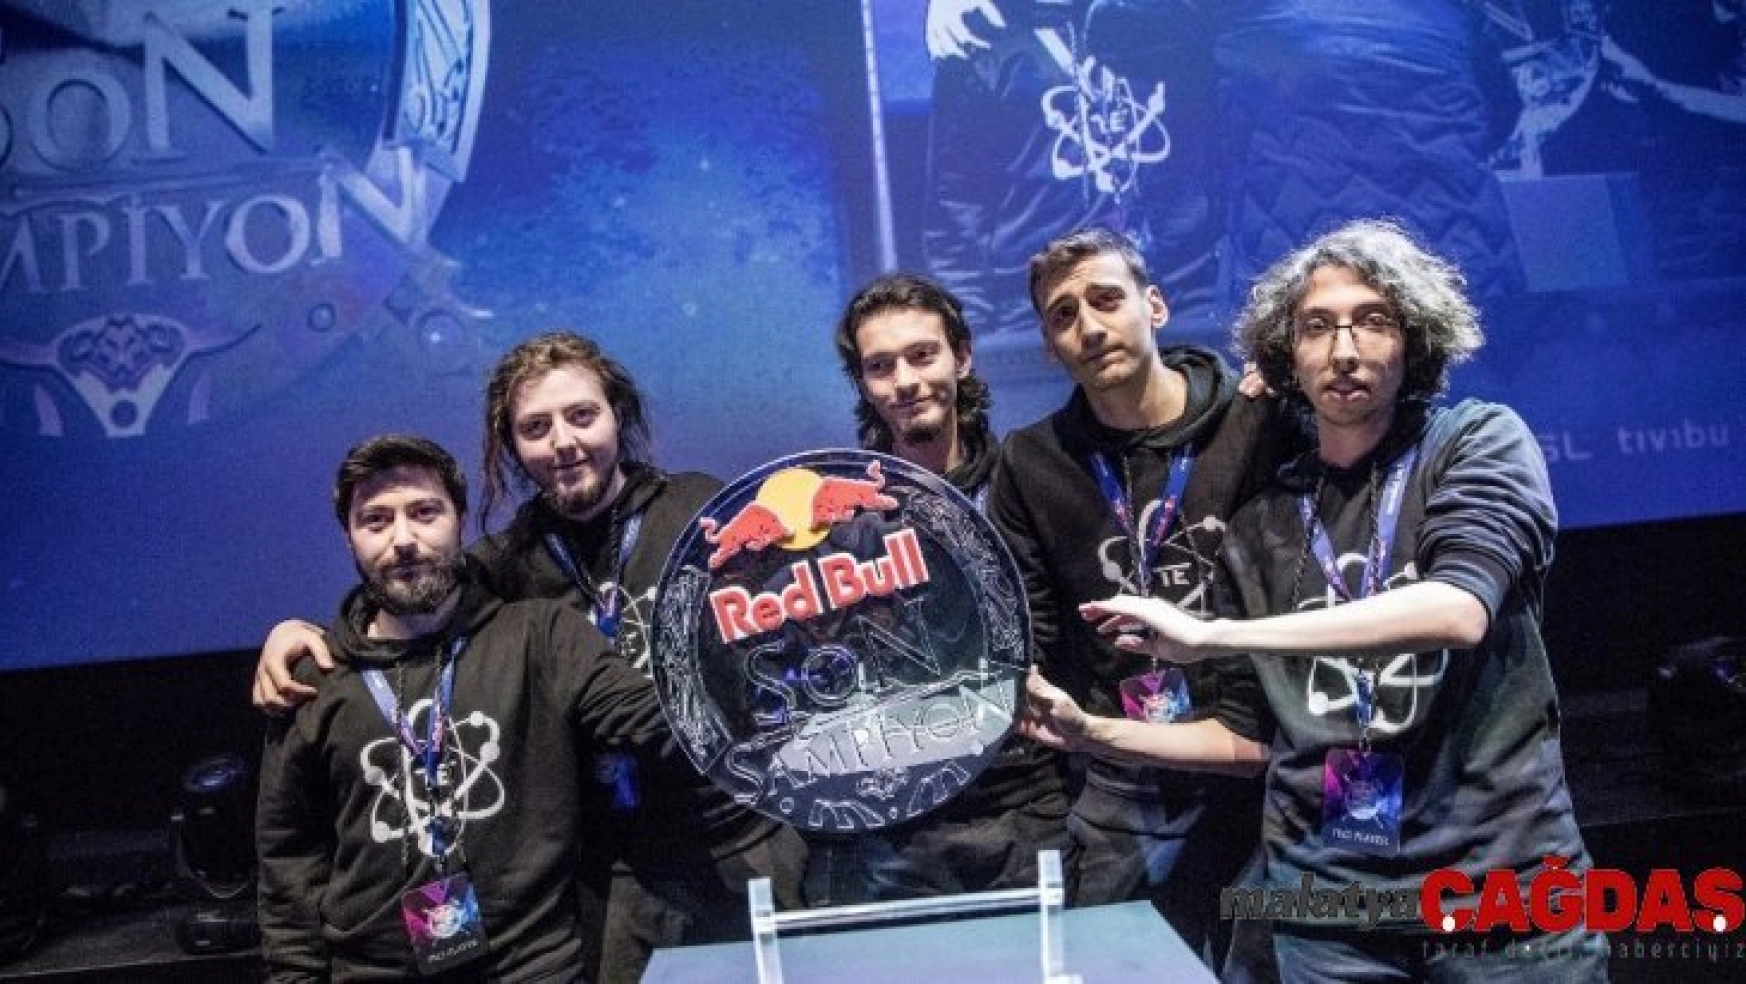 Red Bull Son Şampiyon büyük finali 21 Aralık'ta